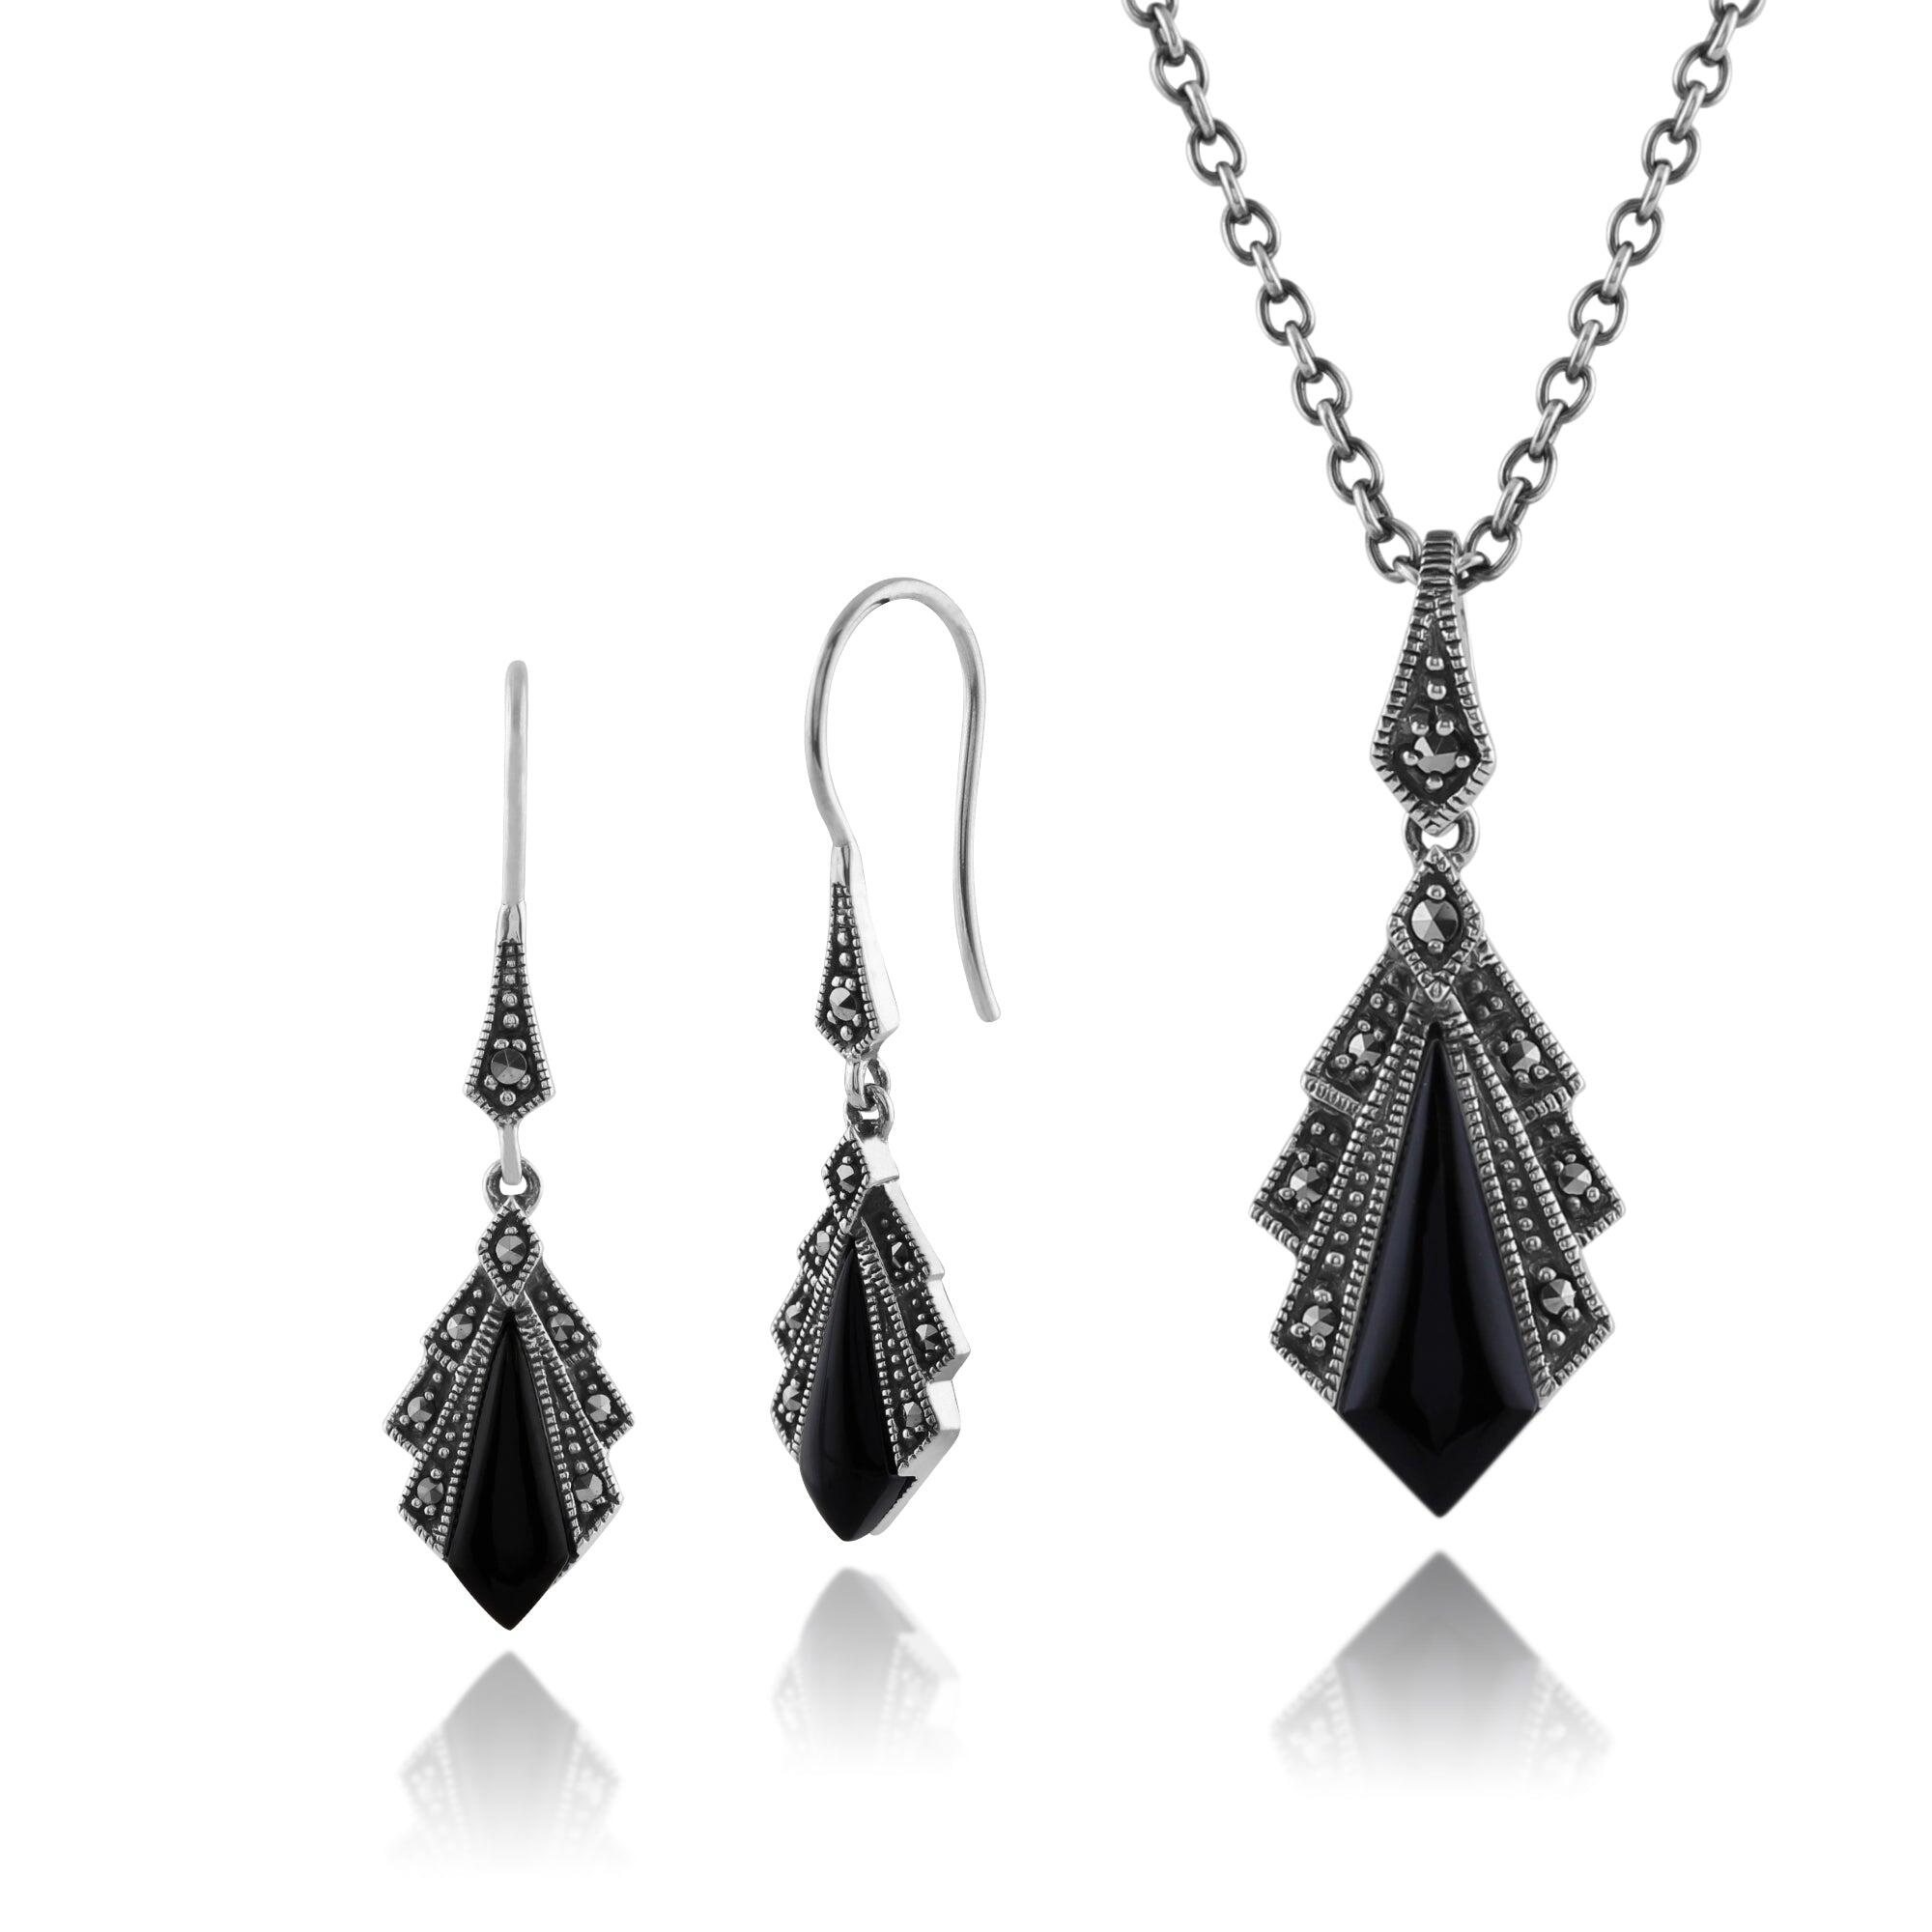 Art Deco Style Style Black Onyx & Marcasite Fan Drop Earrings & Pendant Set in 925 Sterling Silver